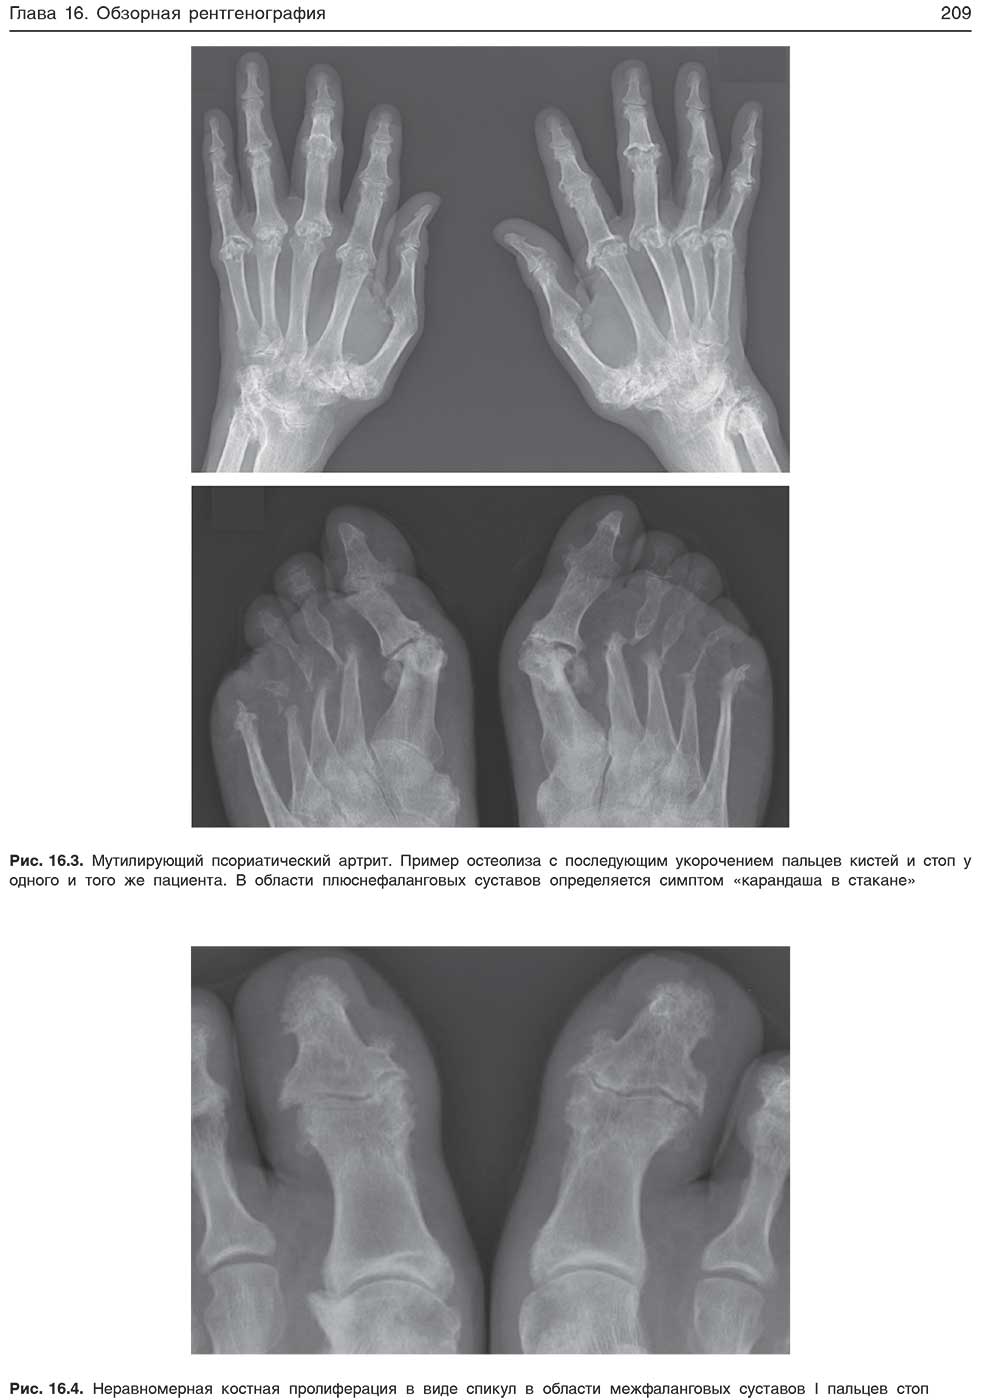 Неравномерная костная пролиферация в виде спикул в области межфаланговых суставов